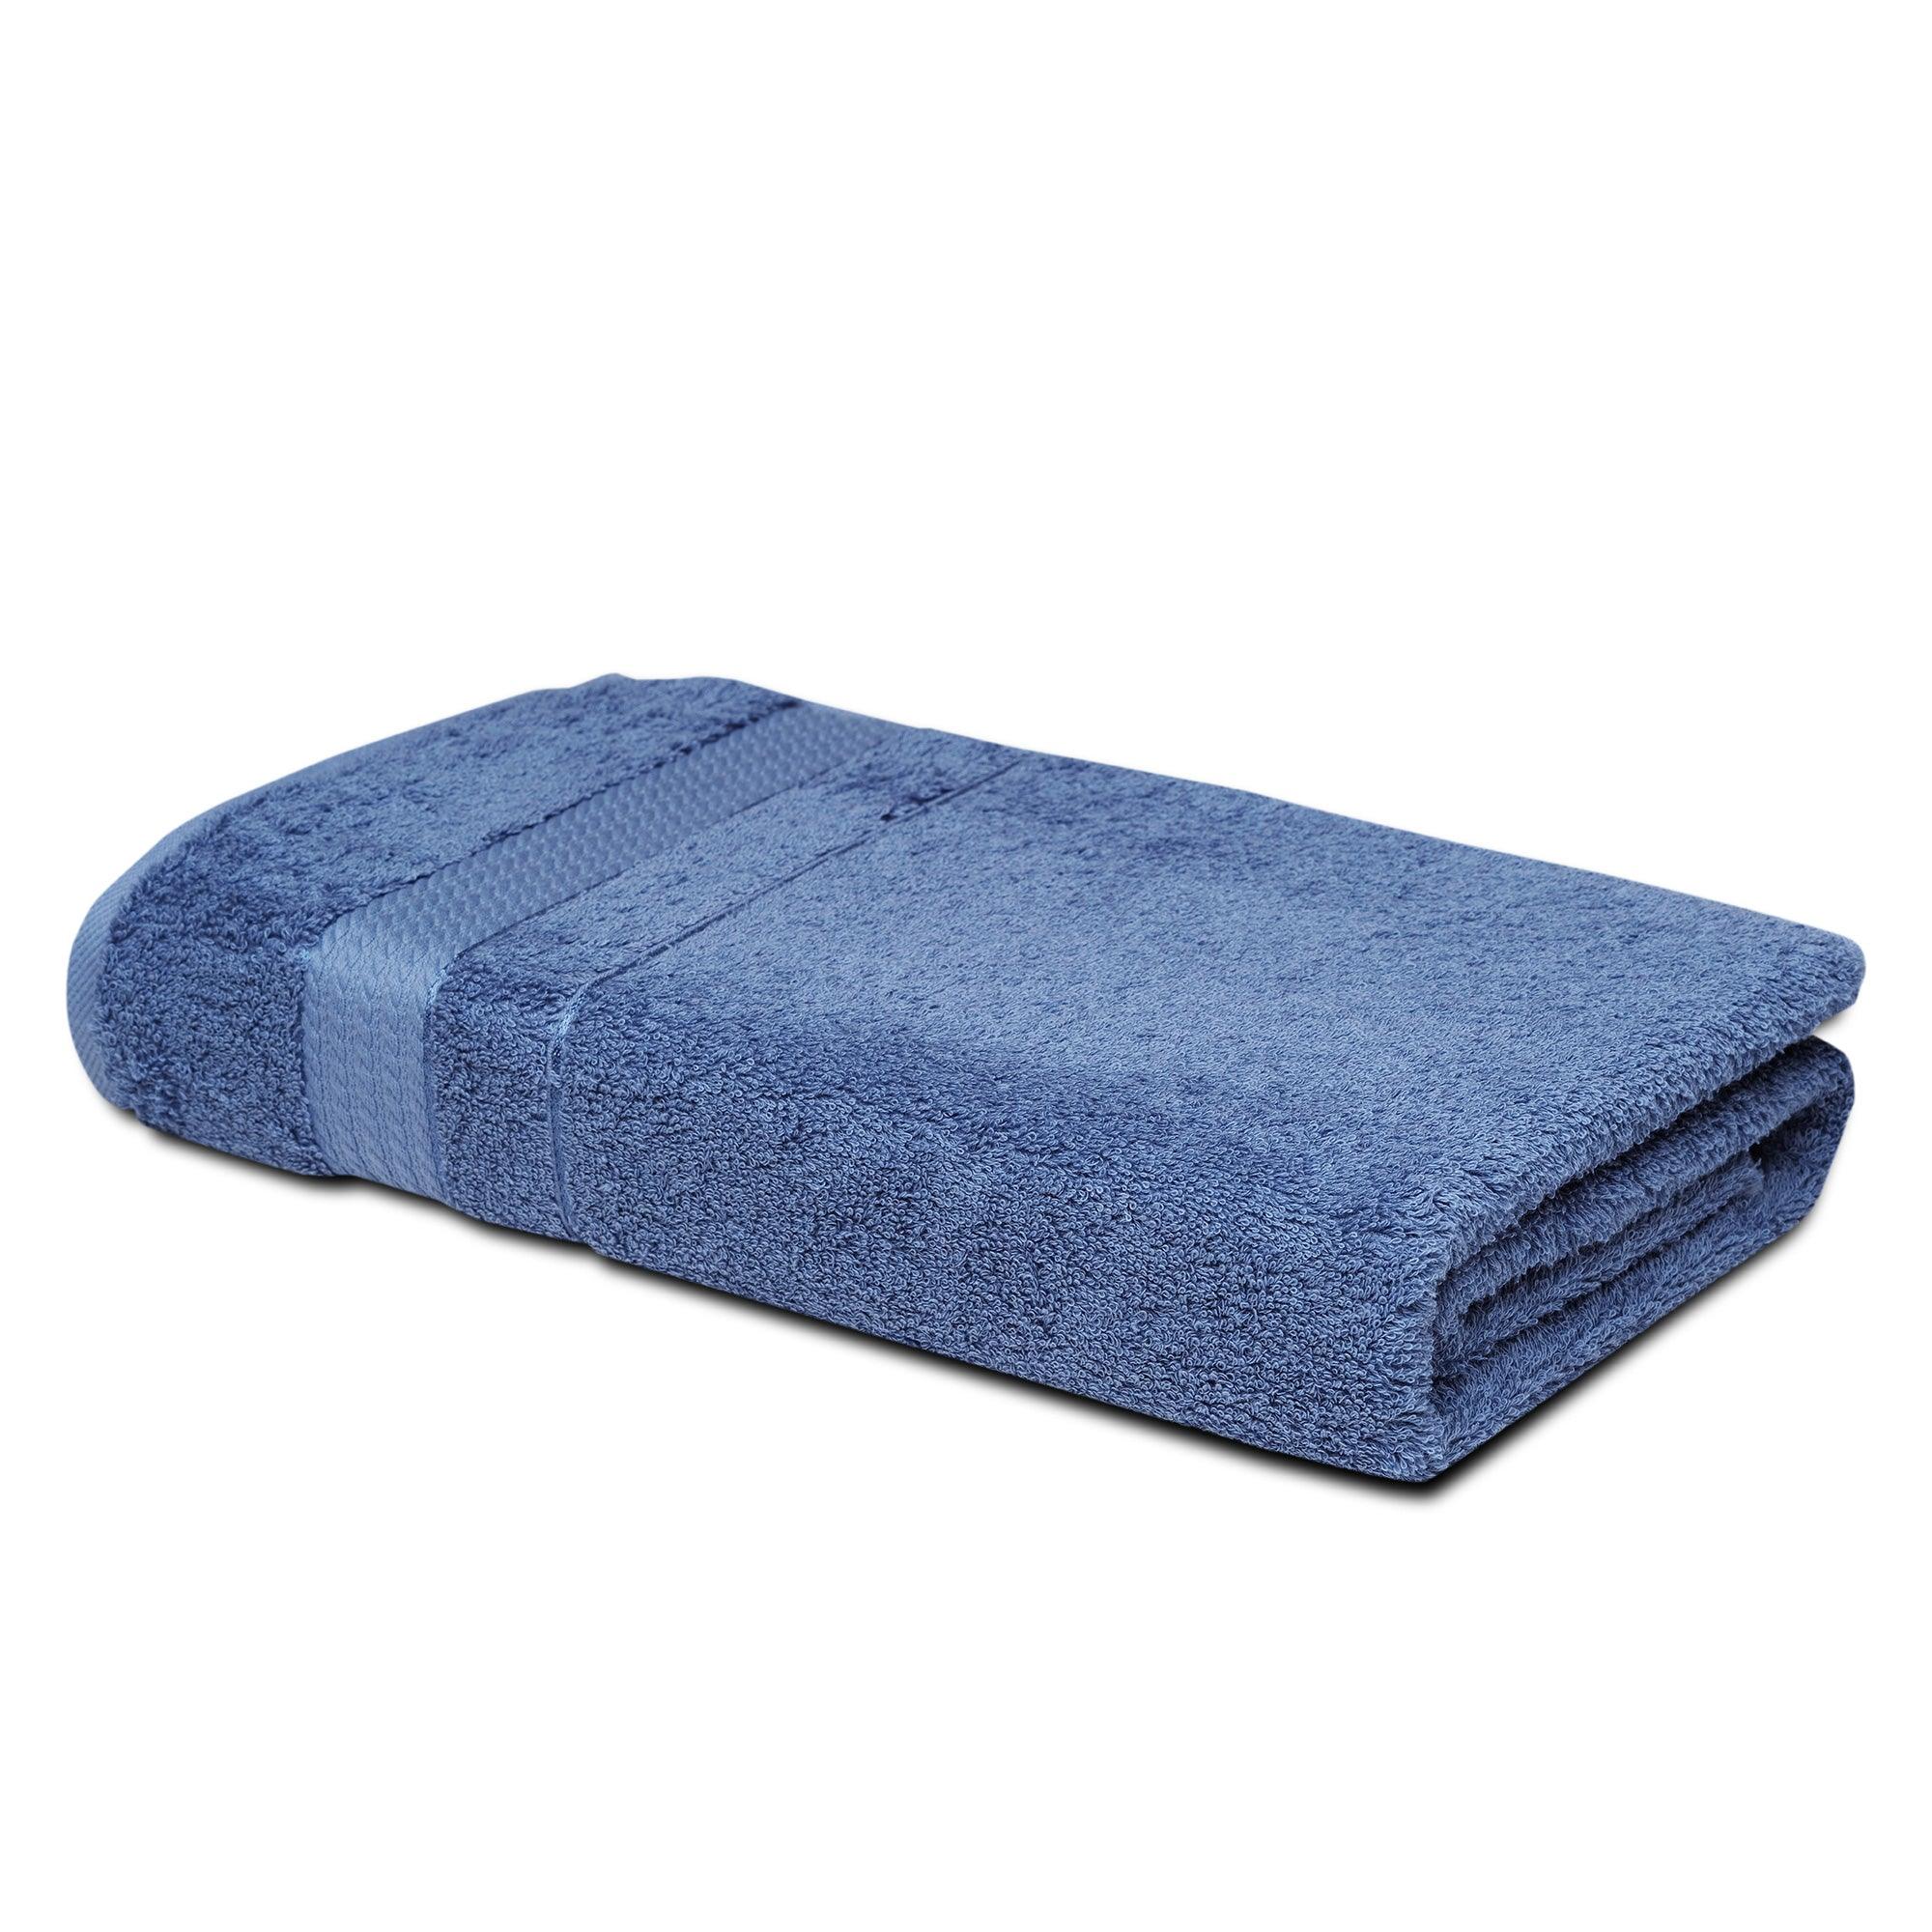 http://melissalinen.com/cdn/shop/products/bathsheet-towel-blue-1.jpg?v=1681244088